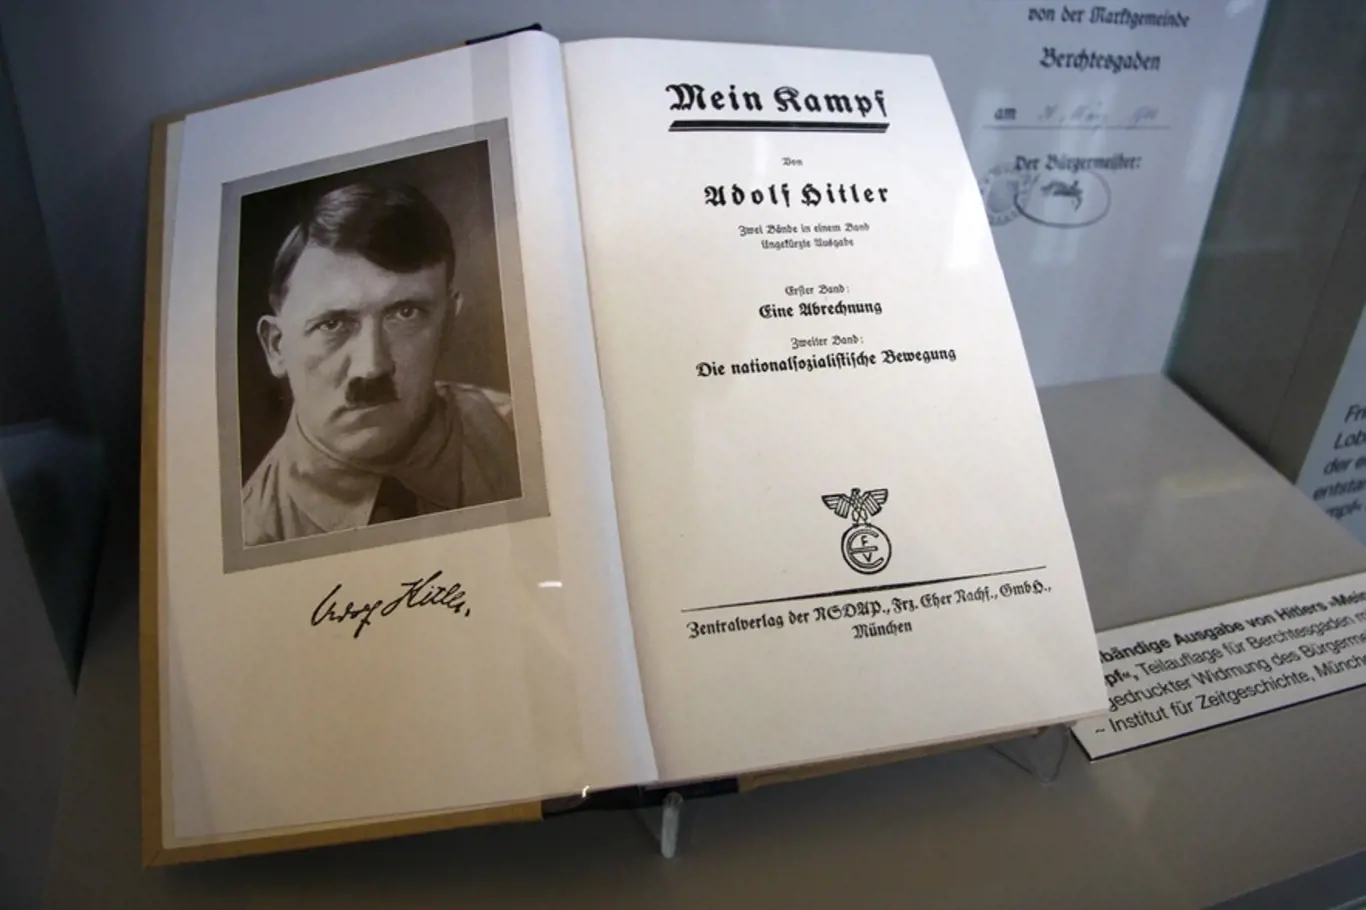 Mein Kampf vydělal Hitlerovi obrovskou sumu říšských marek.